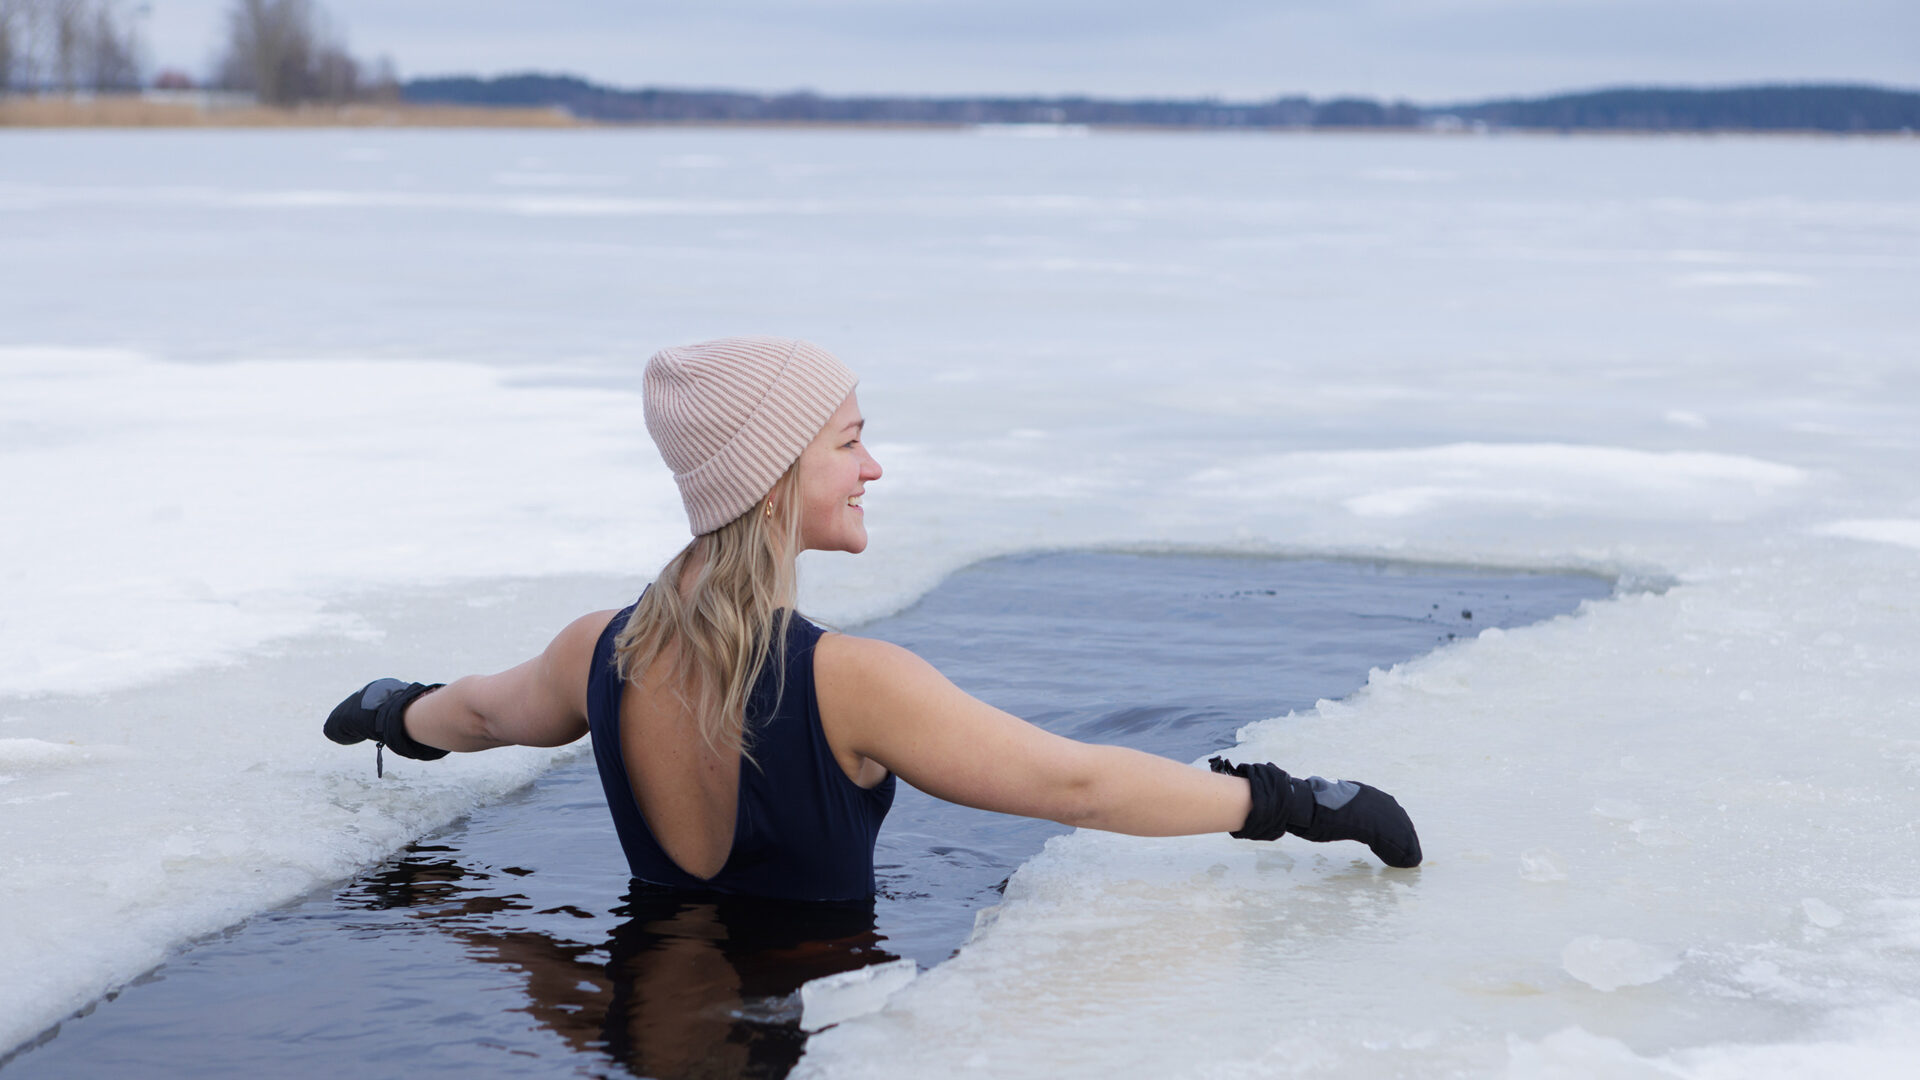 Is ijszwemmen gezond? Dit wil je erover weten